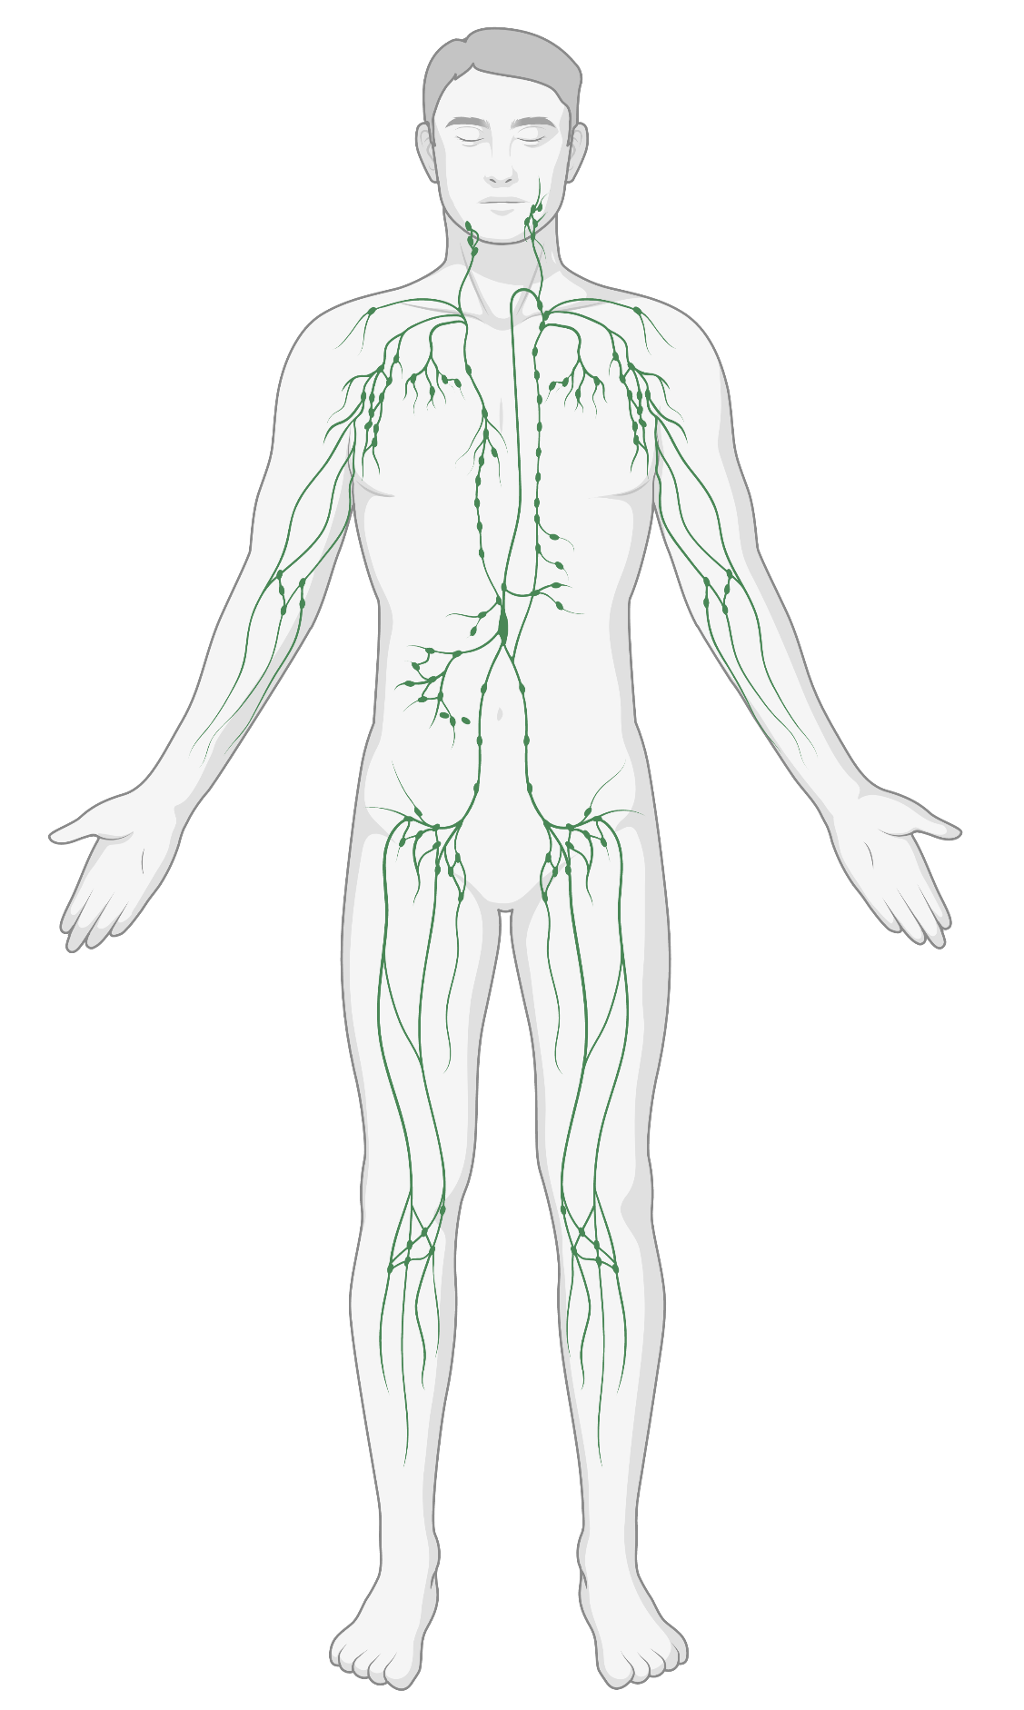 Utbredelsen av lymfesystemet i kroppen. Illustrasjon